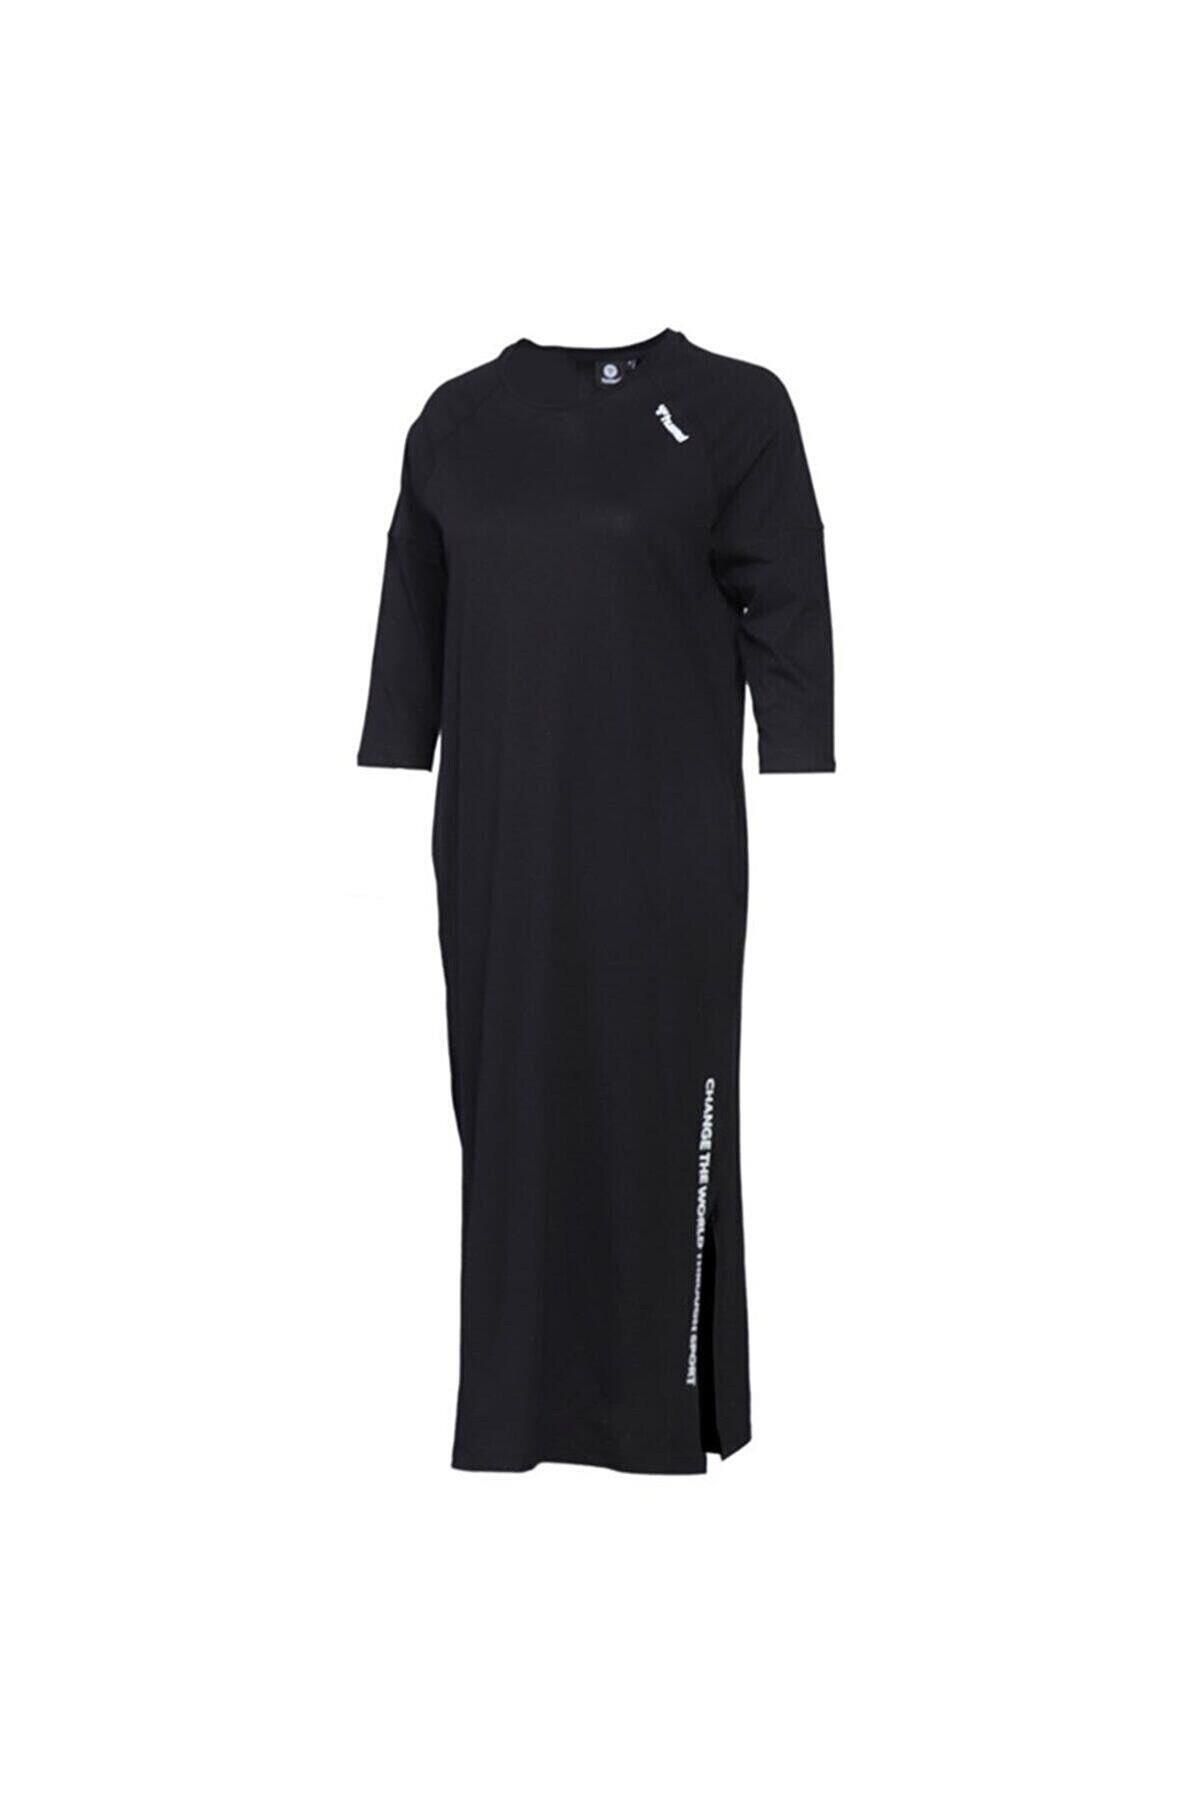 hummel 960015 Kadın Siyah Elbise